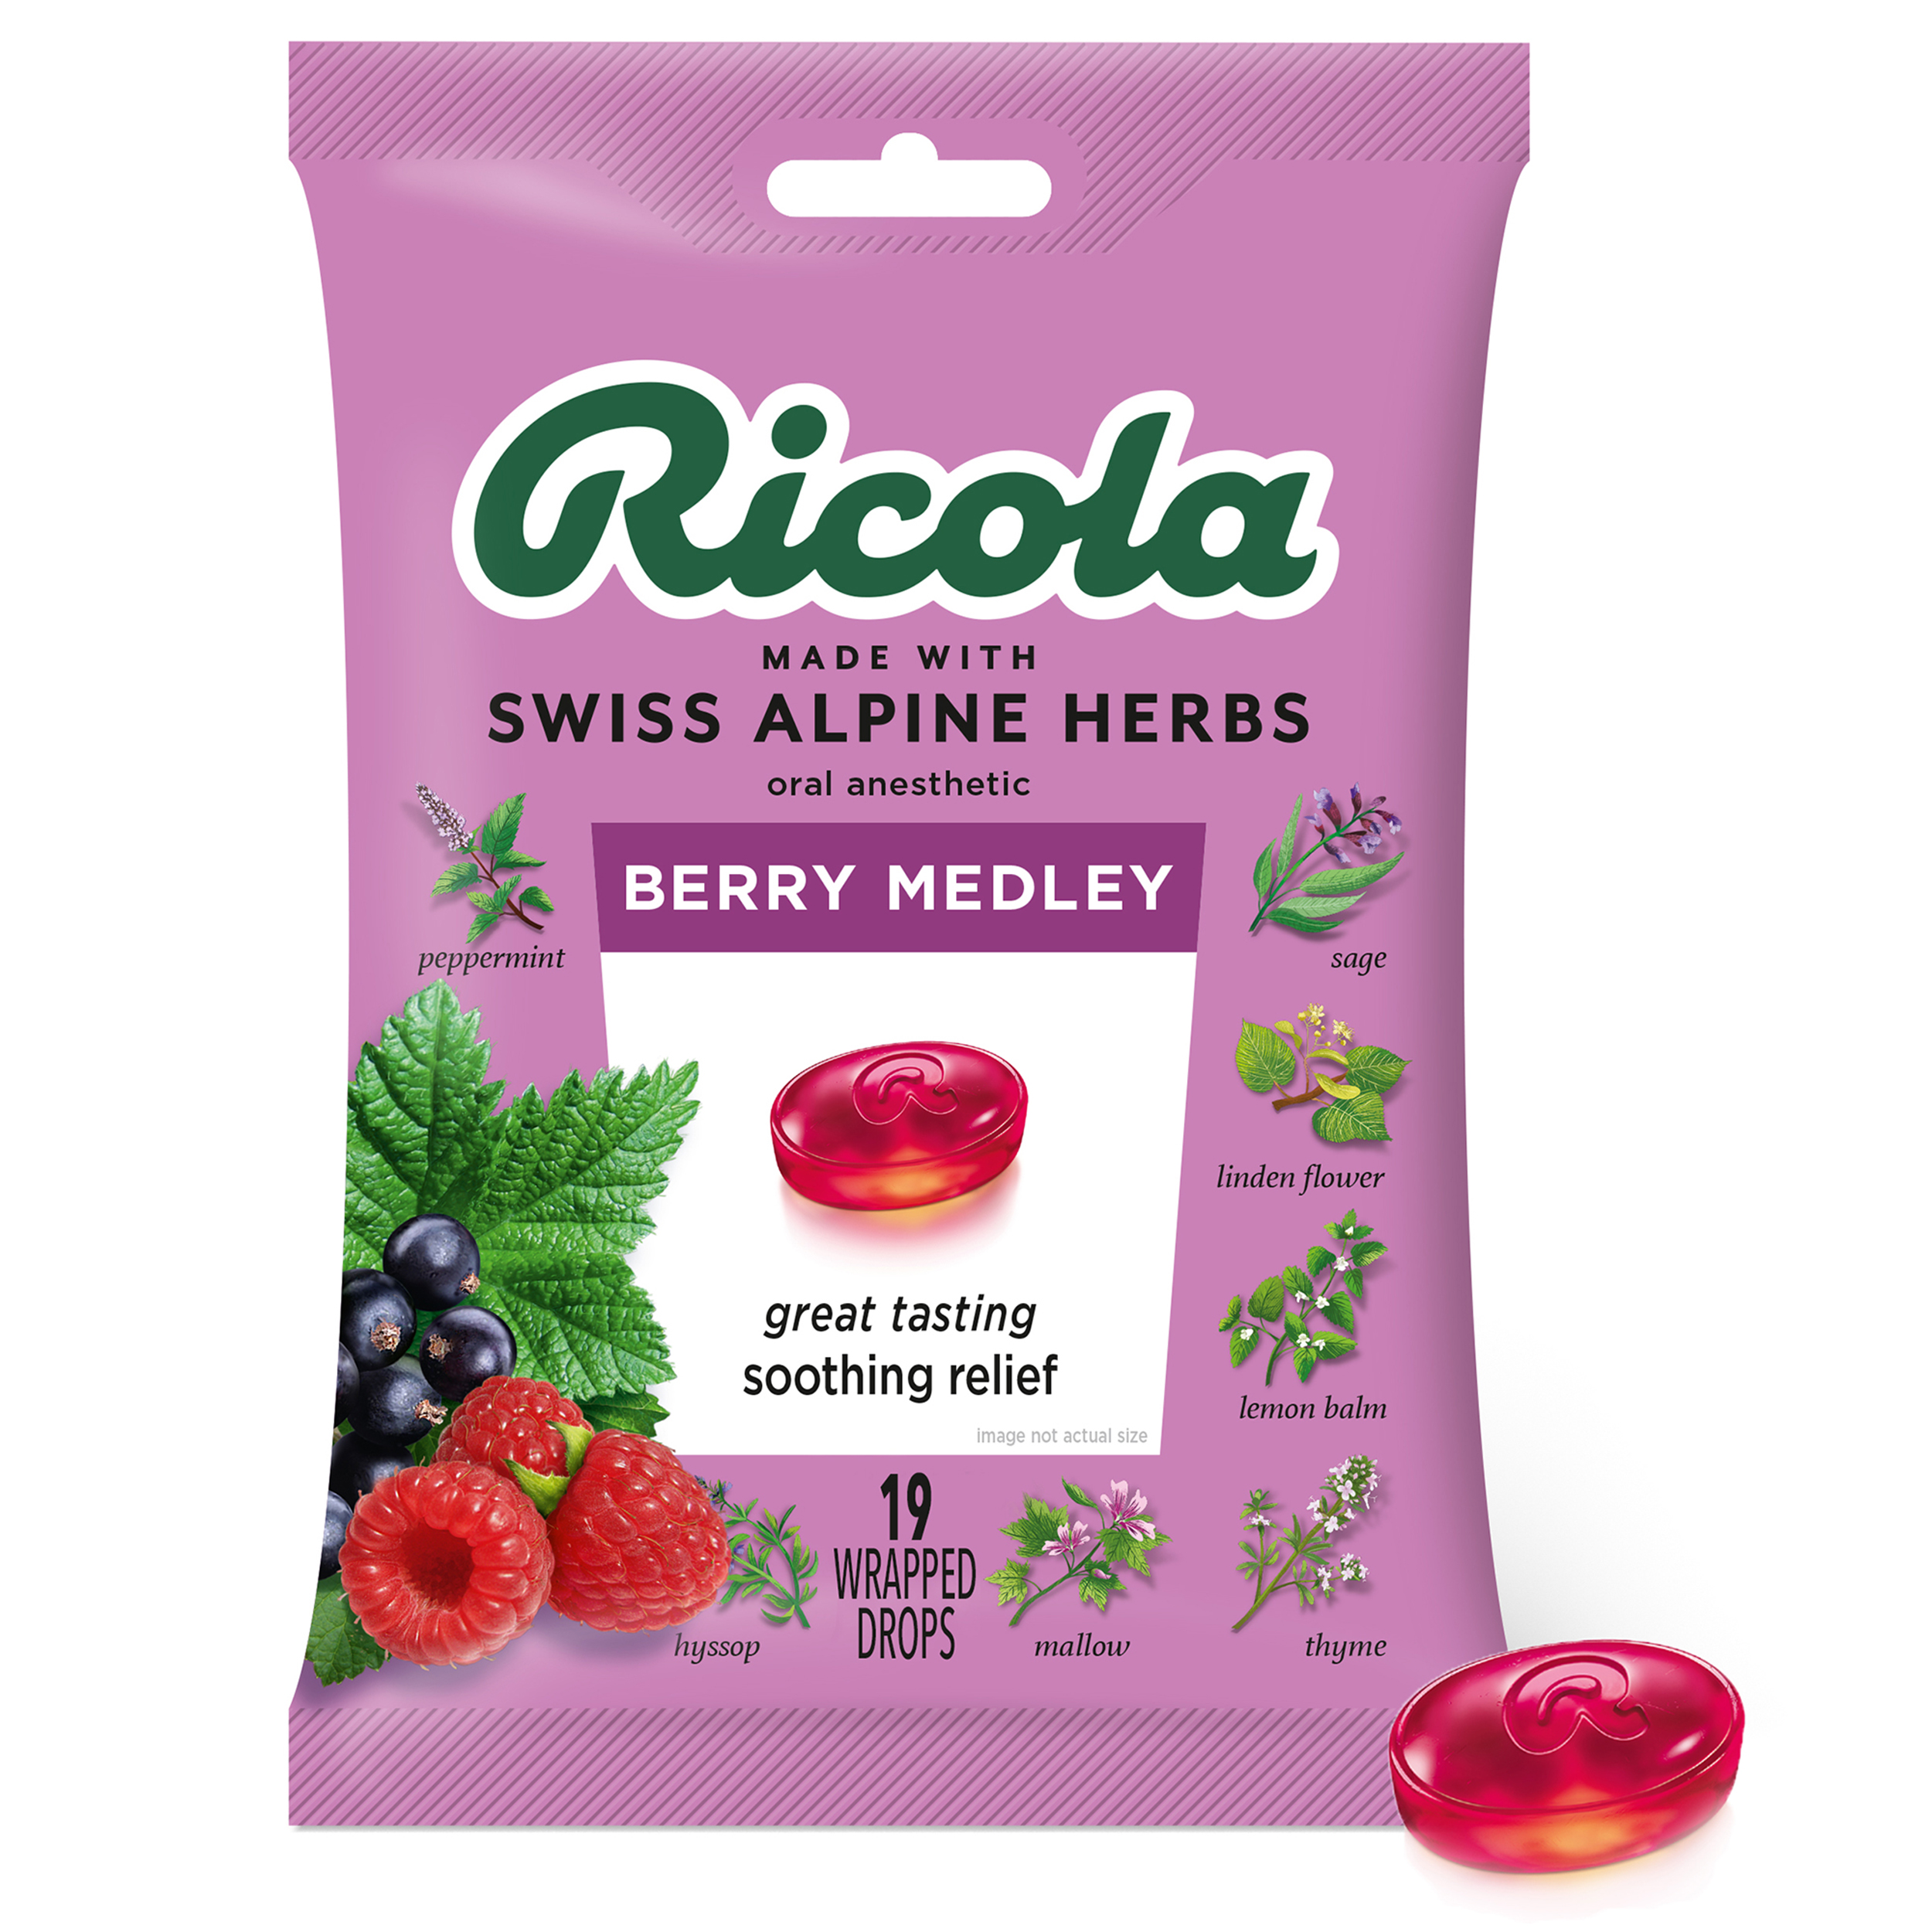 Ricola The Original Natural Herb Cough Drops - 130 Drops